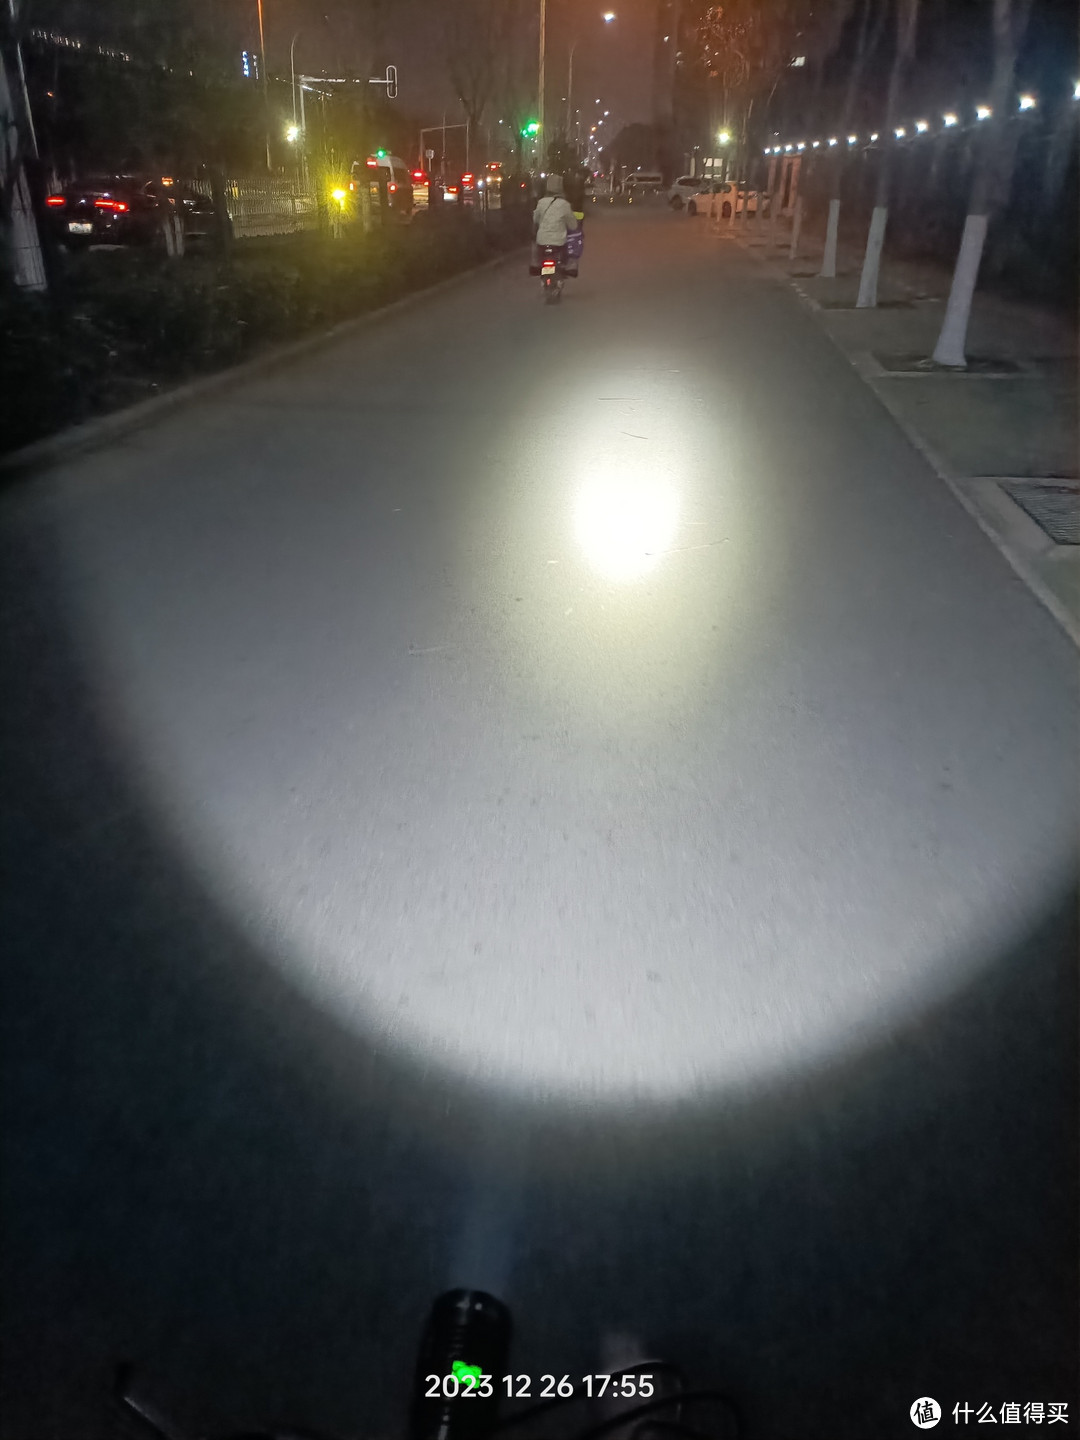 我放在自行车上面，能够照亮整个路面，中心的光斑都不能直视，太刺眼了。